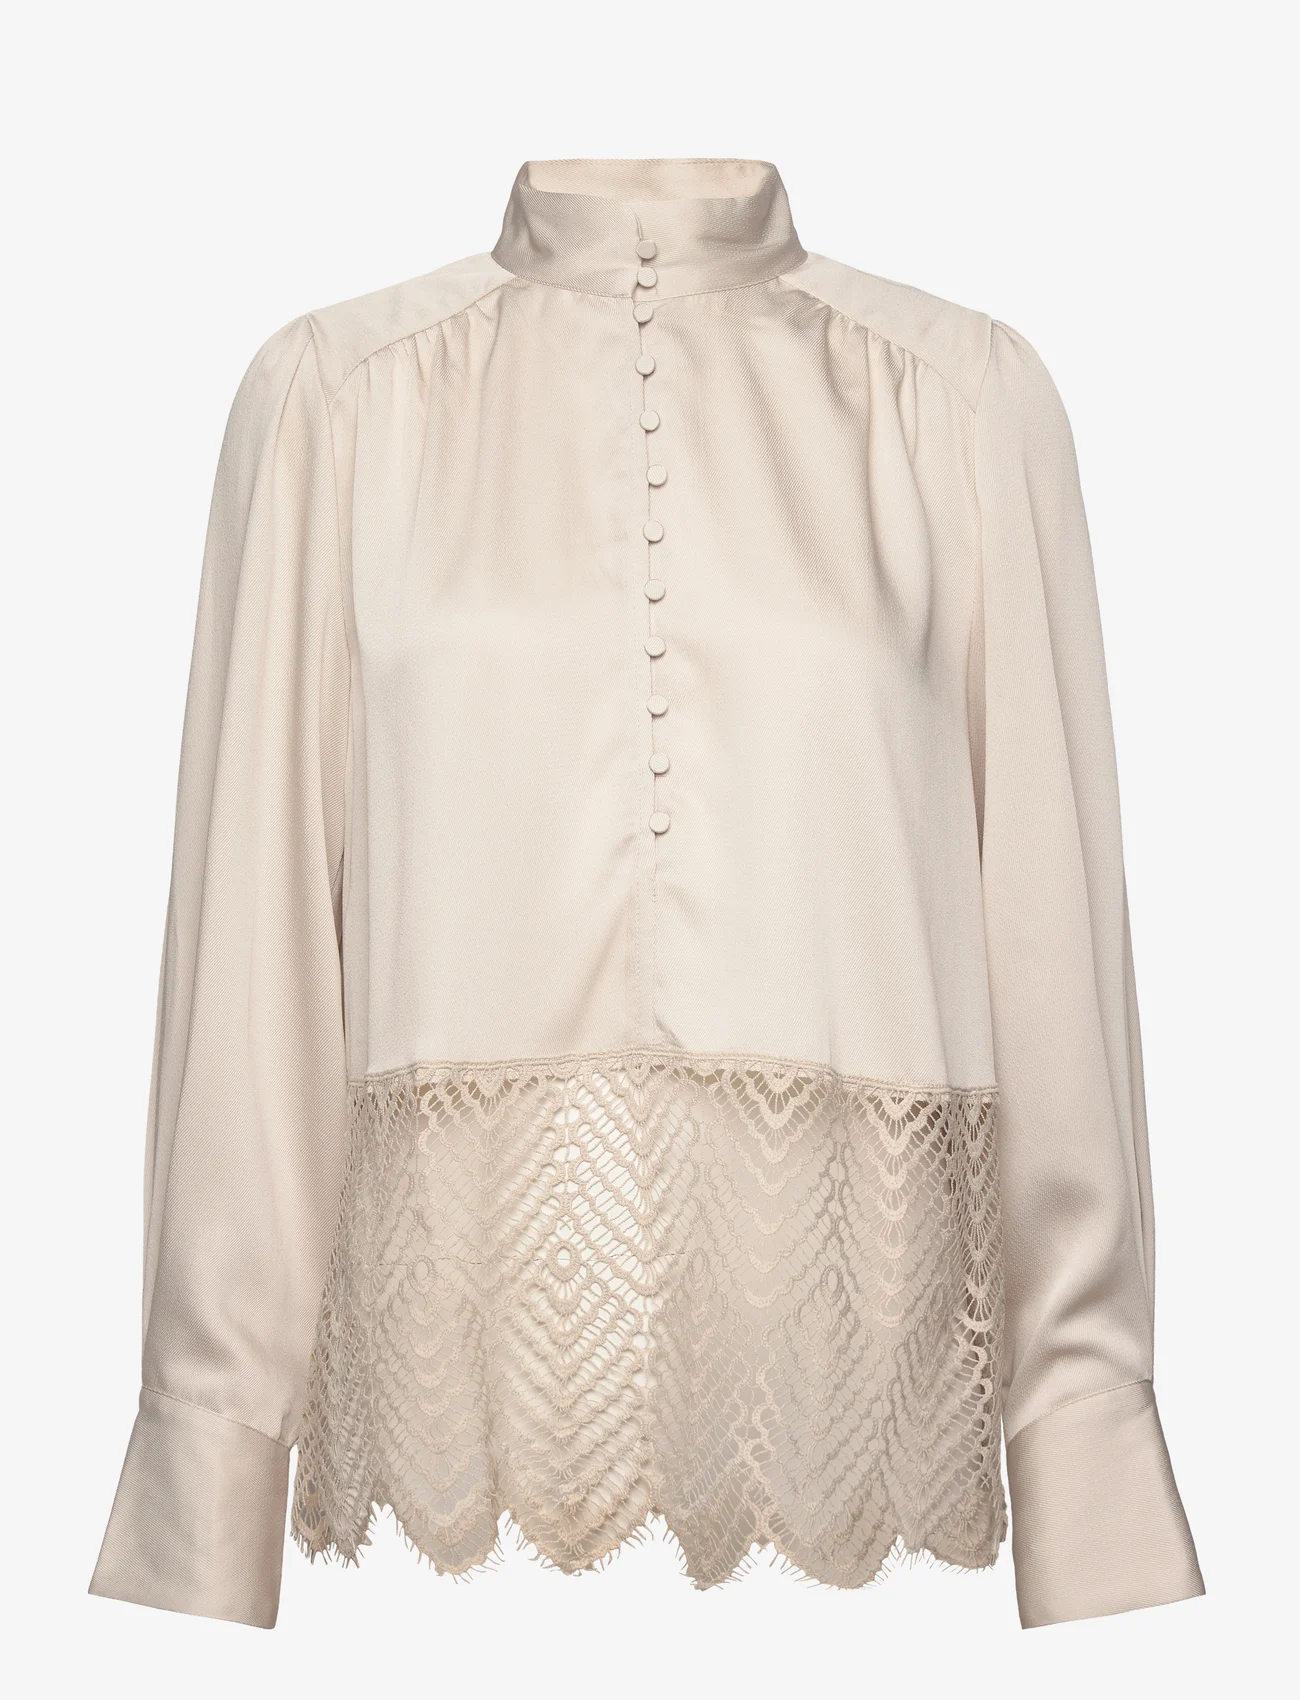 Bruuns Bazaar - CedarsBBChatrina blouse - long sleeved blouses - kit - 1